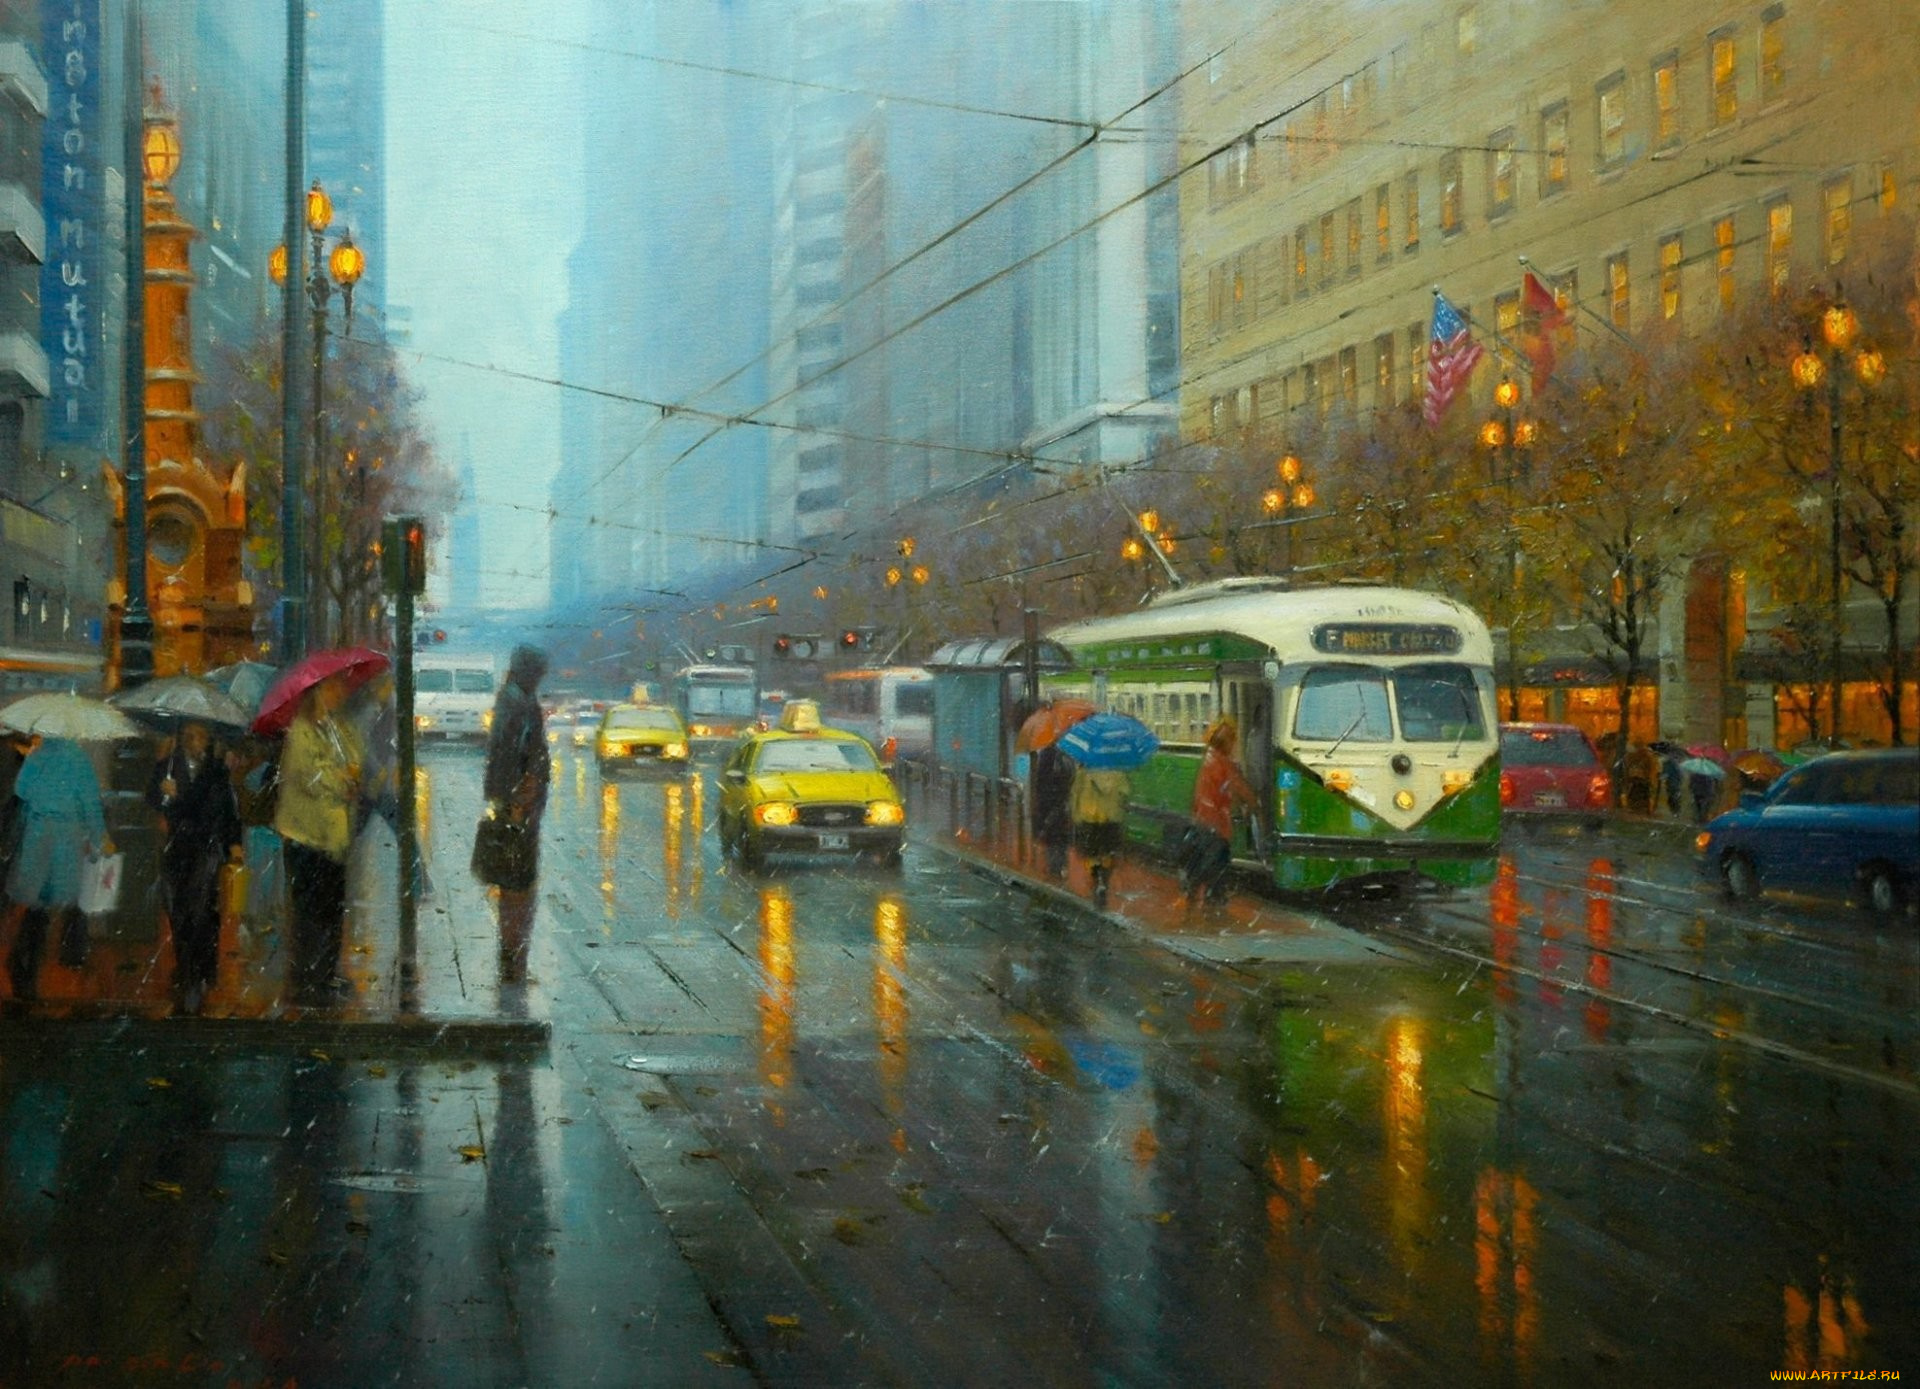 рисованное, живопись, арт, улица, город, дождь, трамвай, люди, зонтики, такси, огни, фонари, светофор